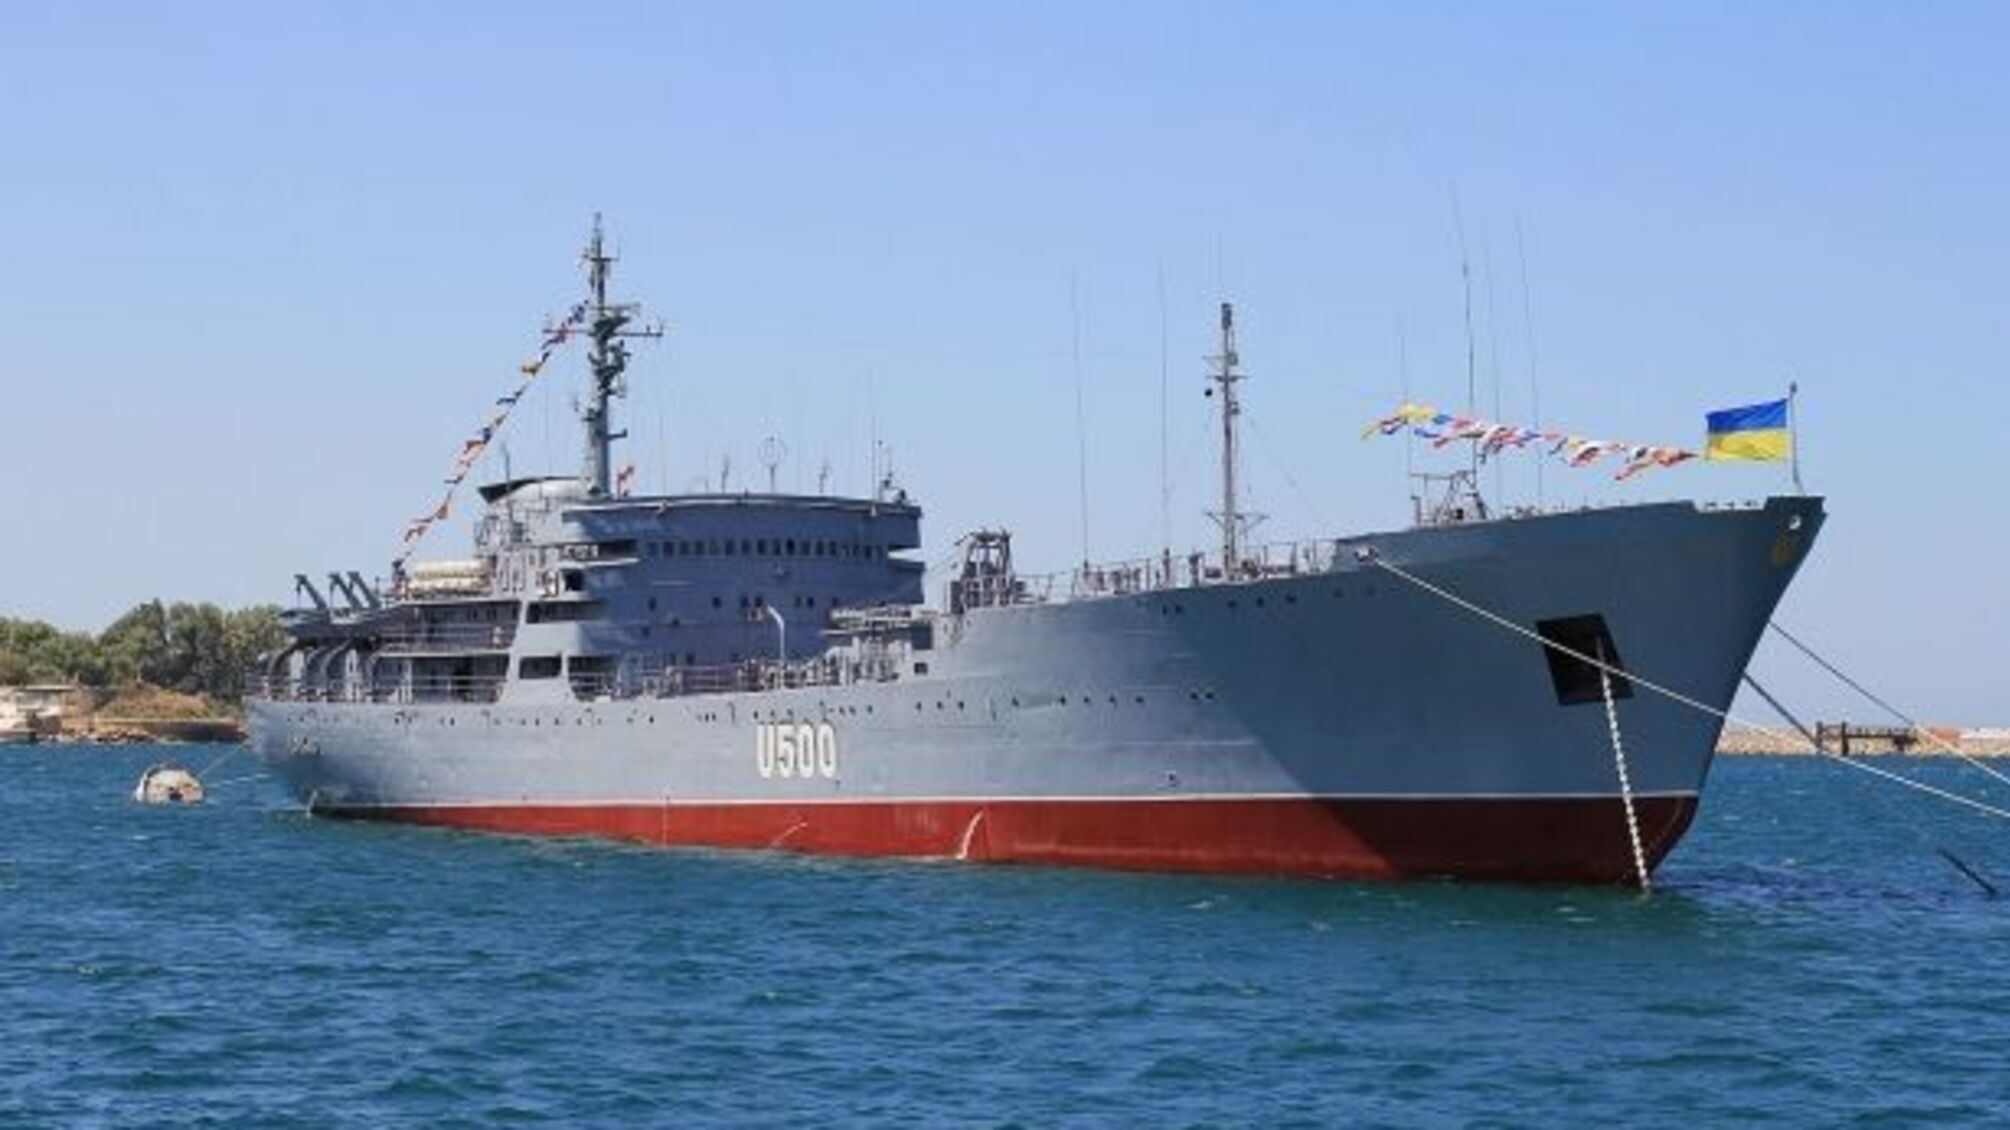 ФСБ може захопити українські судна, – штаб АТО